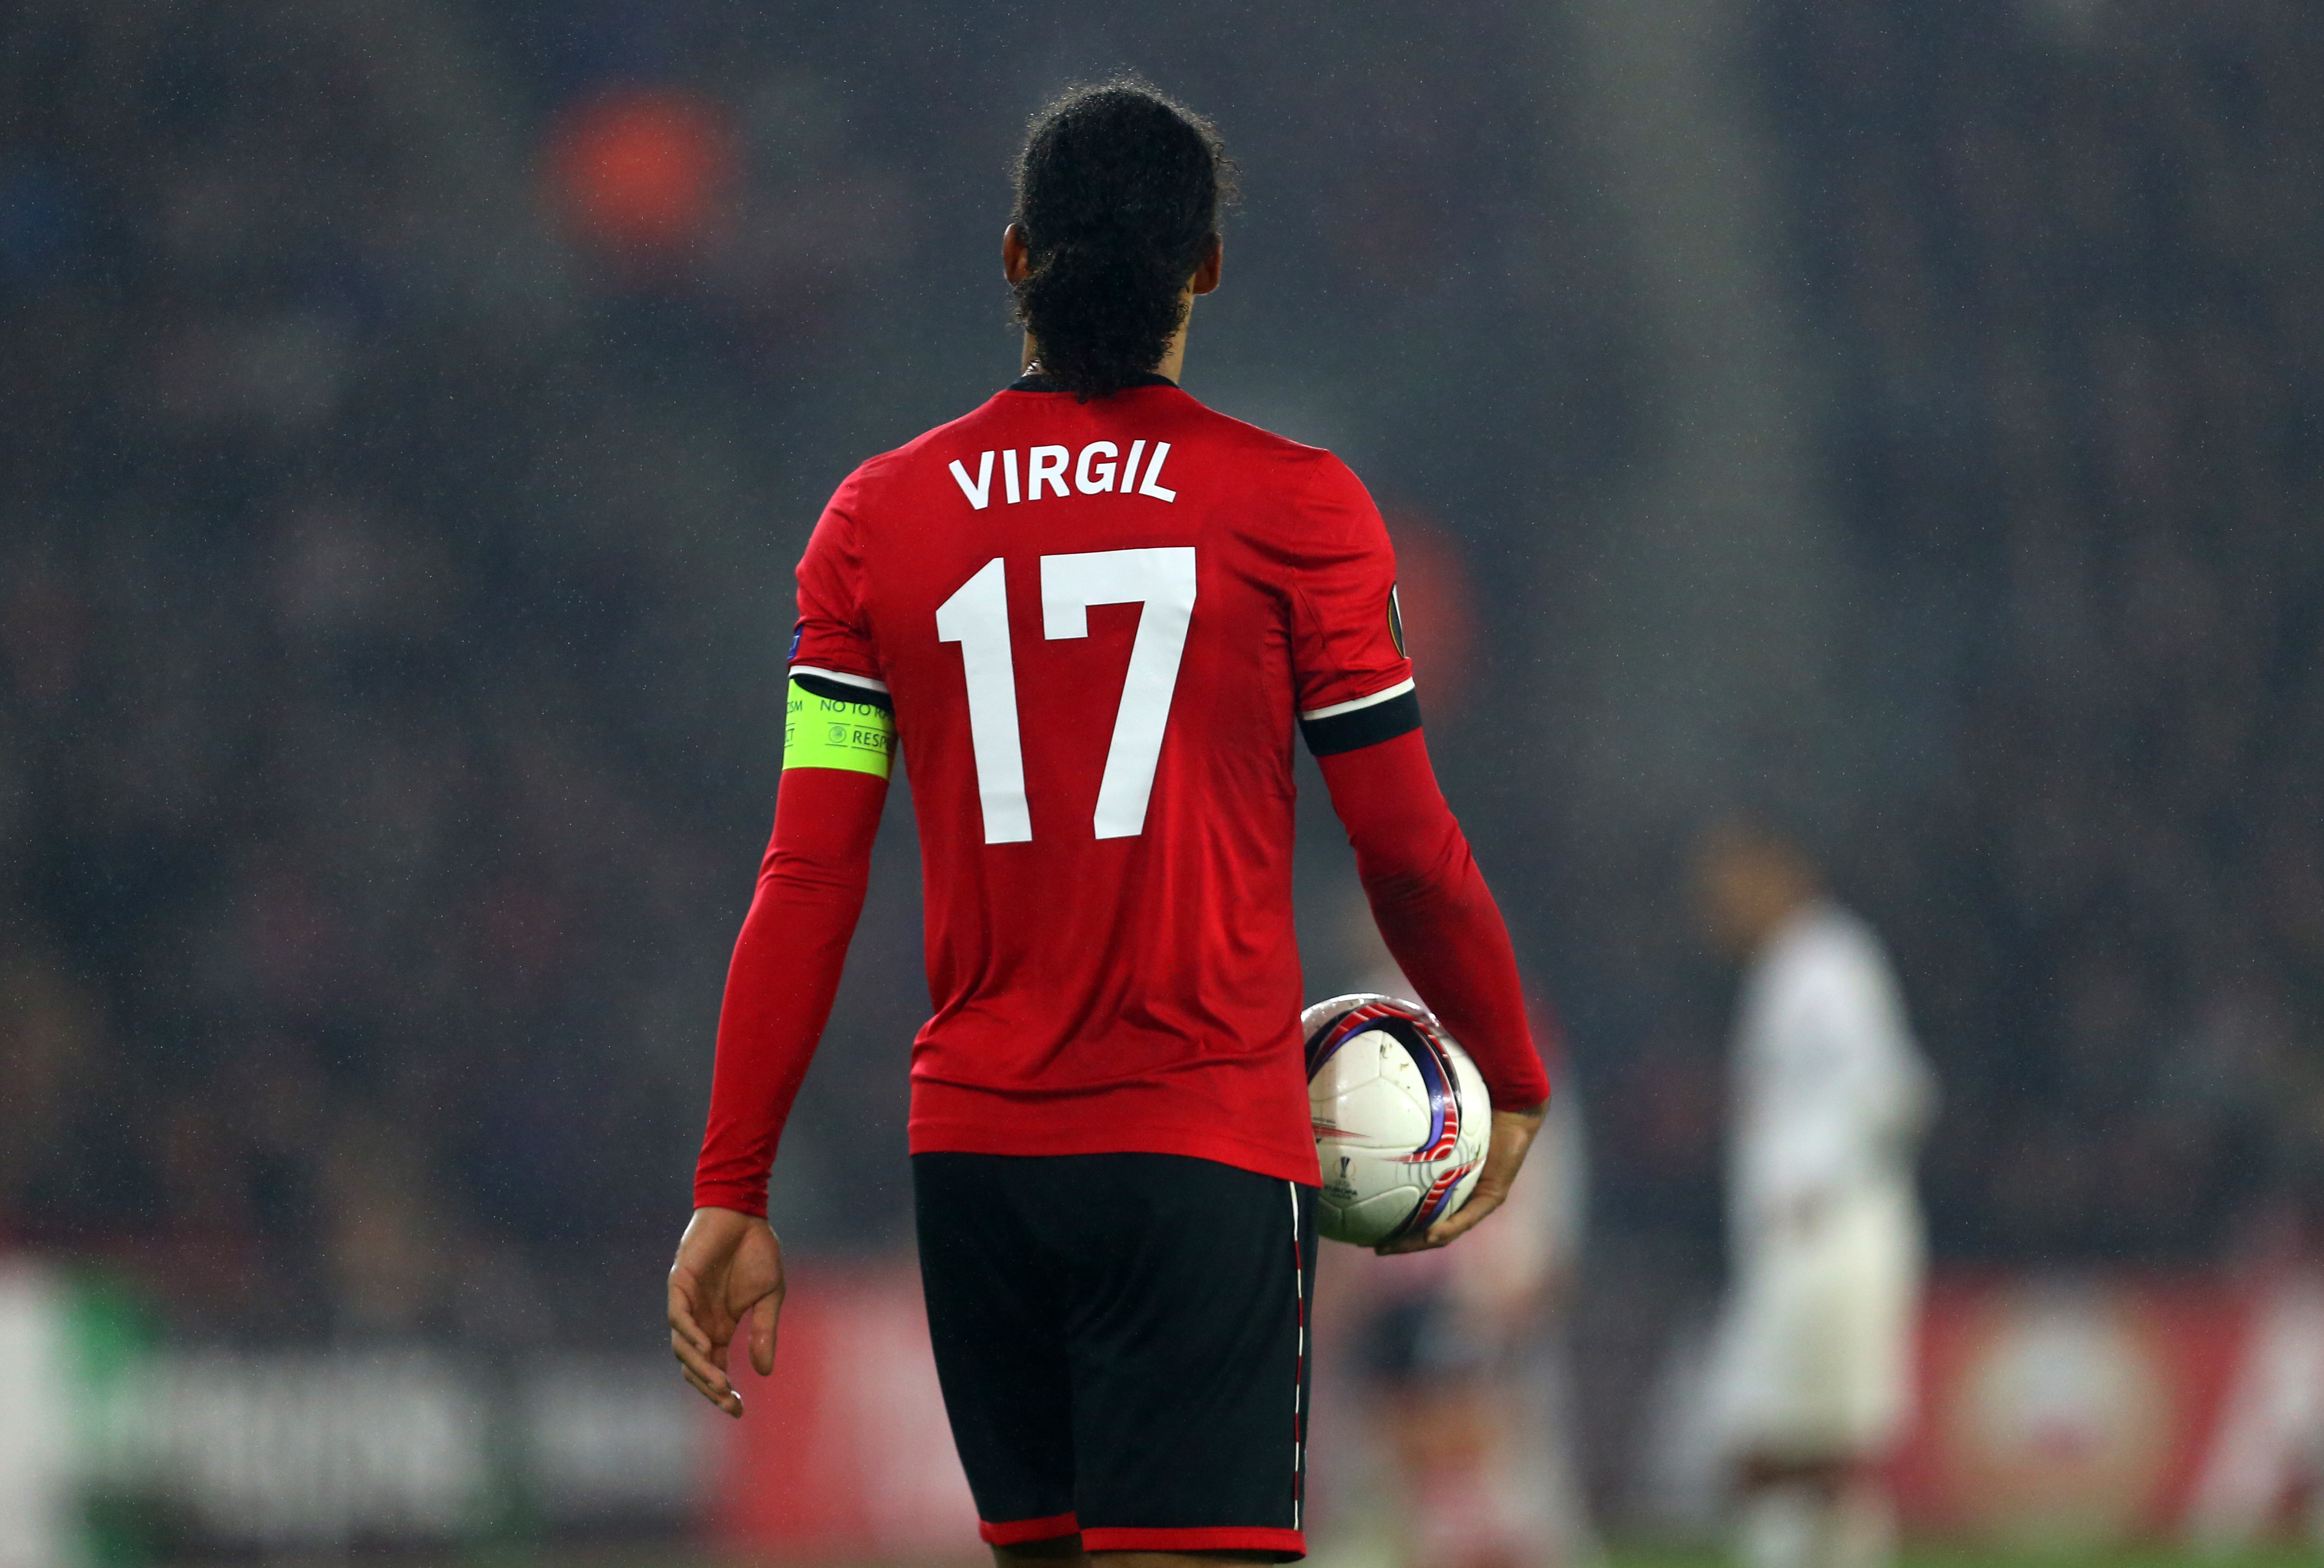 2016/17 Southampton season review Virgil van Dijk